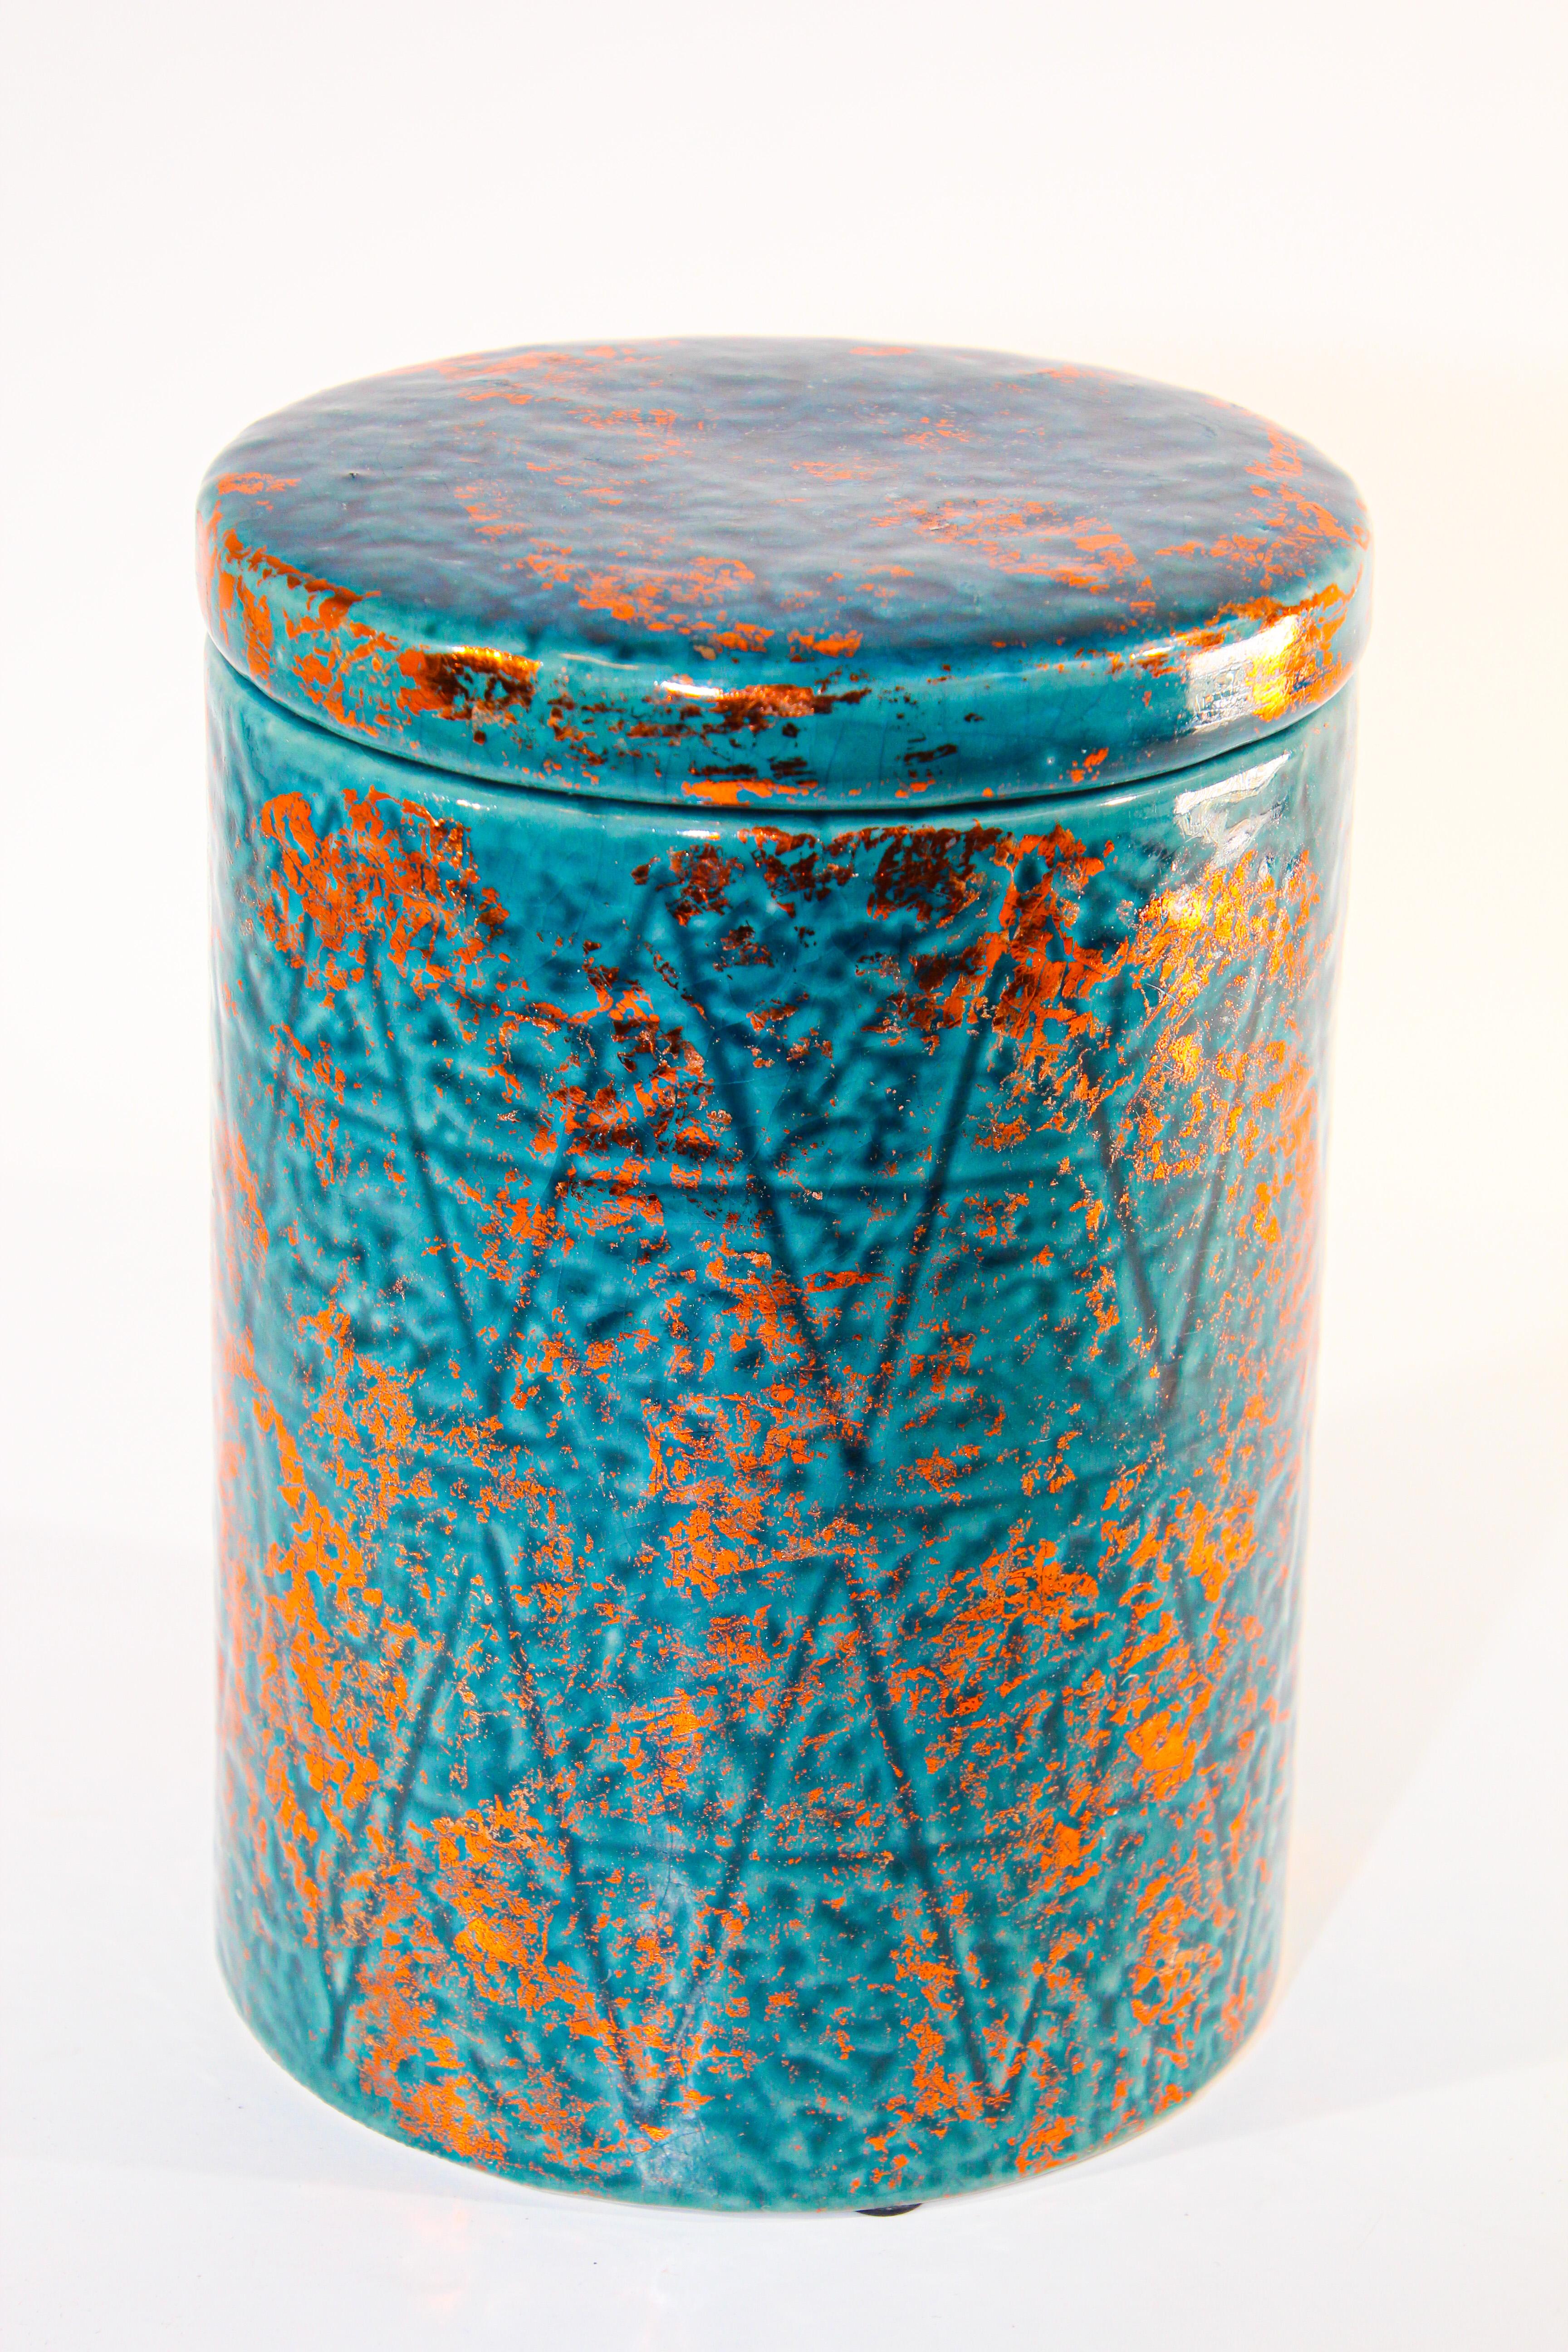 Marokkanische Keramikurne mit Deckel, blau mit Kupferfarbe.
Moderne Form mit klaren Linien, strukturiertes Design.
Hervorragend geeignet für die Küche, das Badezimmer oder für jeden anderen Stil, ob böhmisch, maurisch, Vintage, traditionell oder